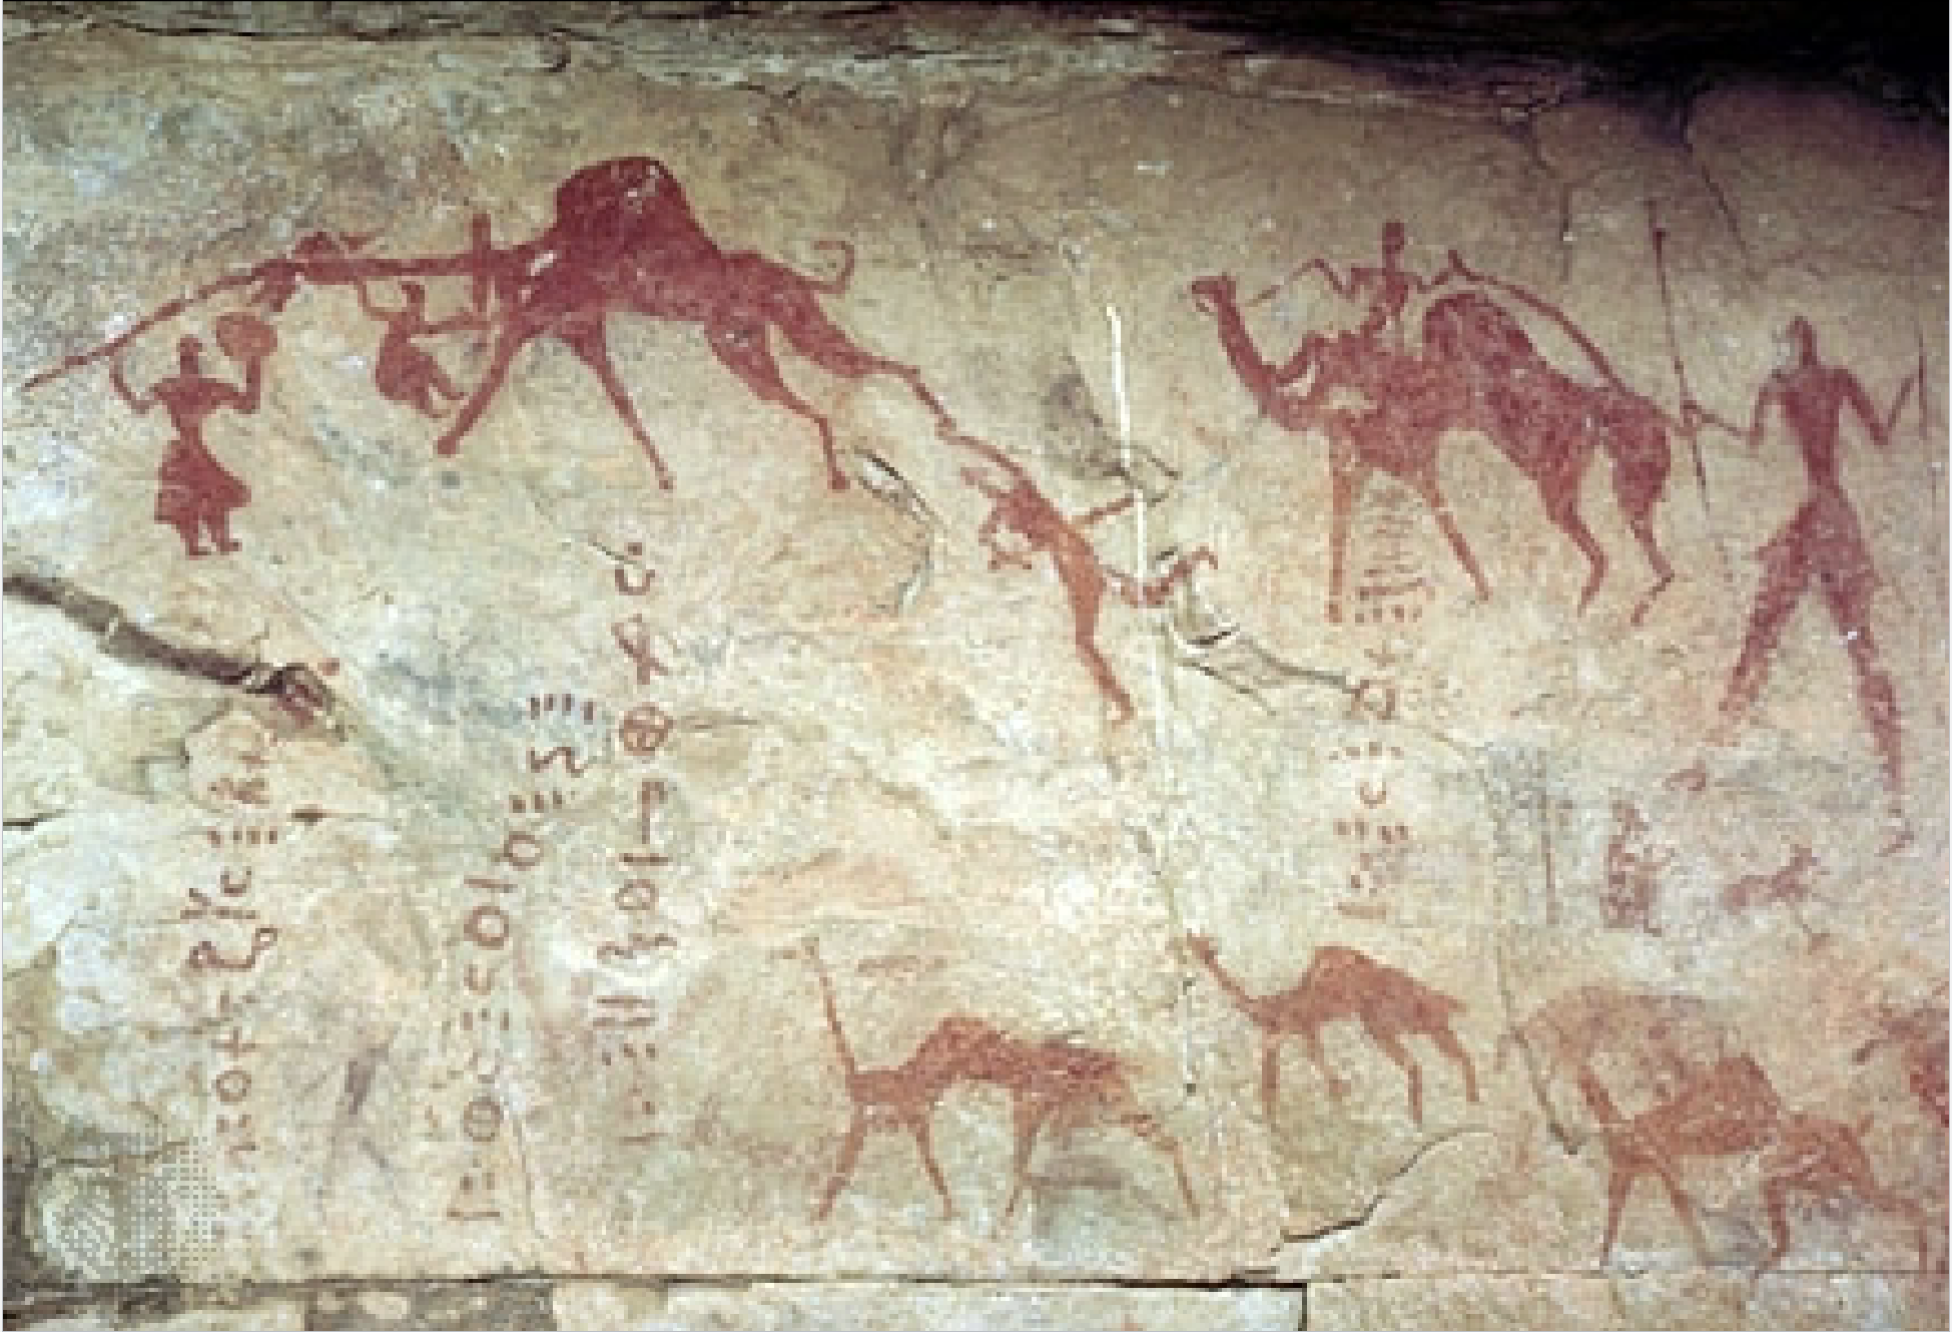 <p>Period: Prehistoric Cave Art</p><p>Location: Tassili n’ Ajjer, Algeria</p><p>Dates: 12,000<sub>BCE</sub> - 1,000<sub>BCE</sub></p><p>Medium: pigment (ochre?) on sandstone</p>